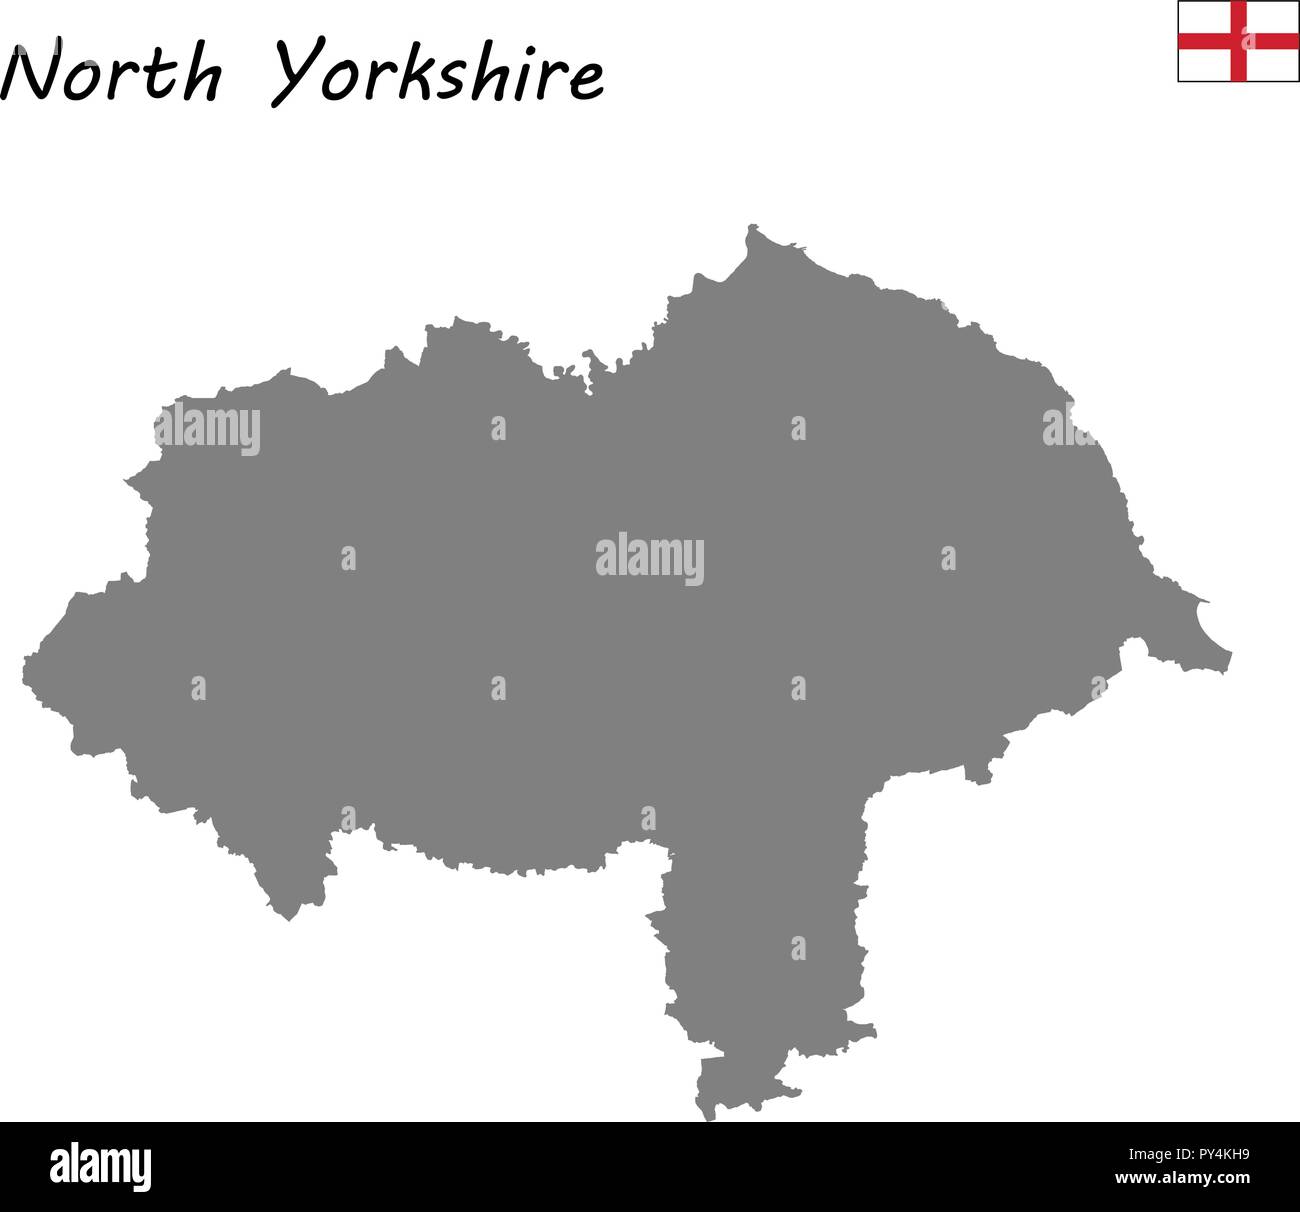 Alta qualità mappa è un cerimoniale di contea di Inghilterra. North Yorkshire Illustrazione Vettoriale